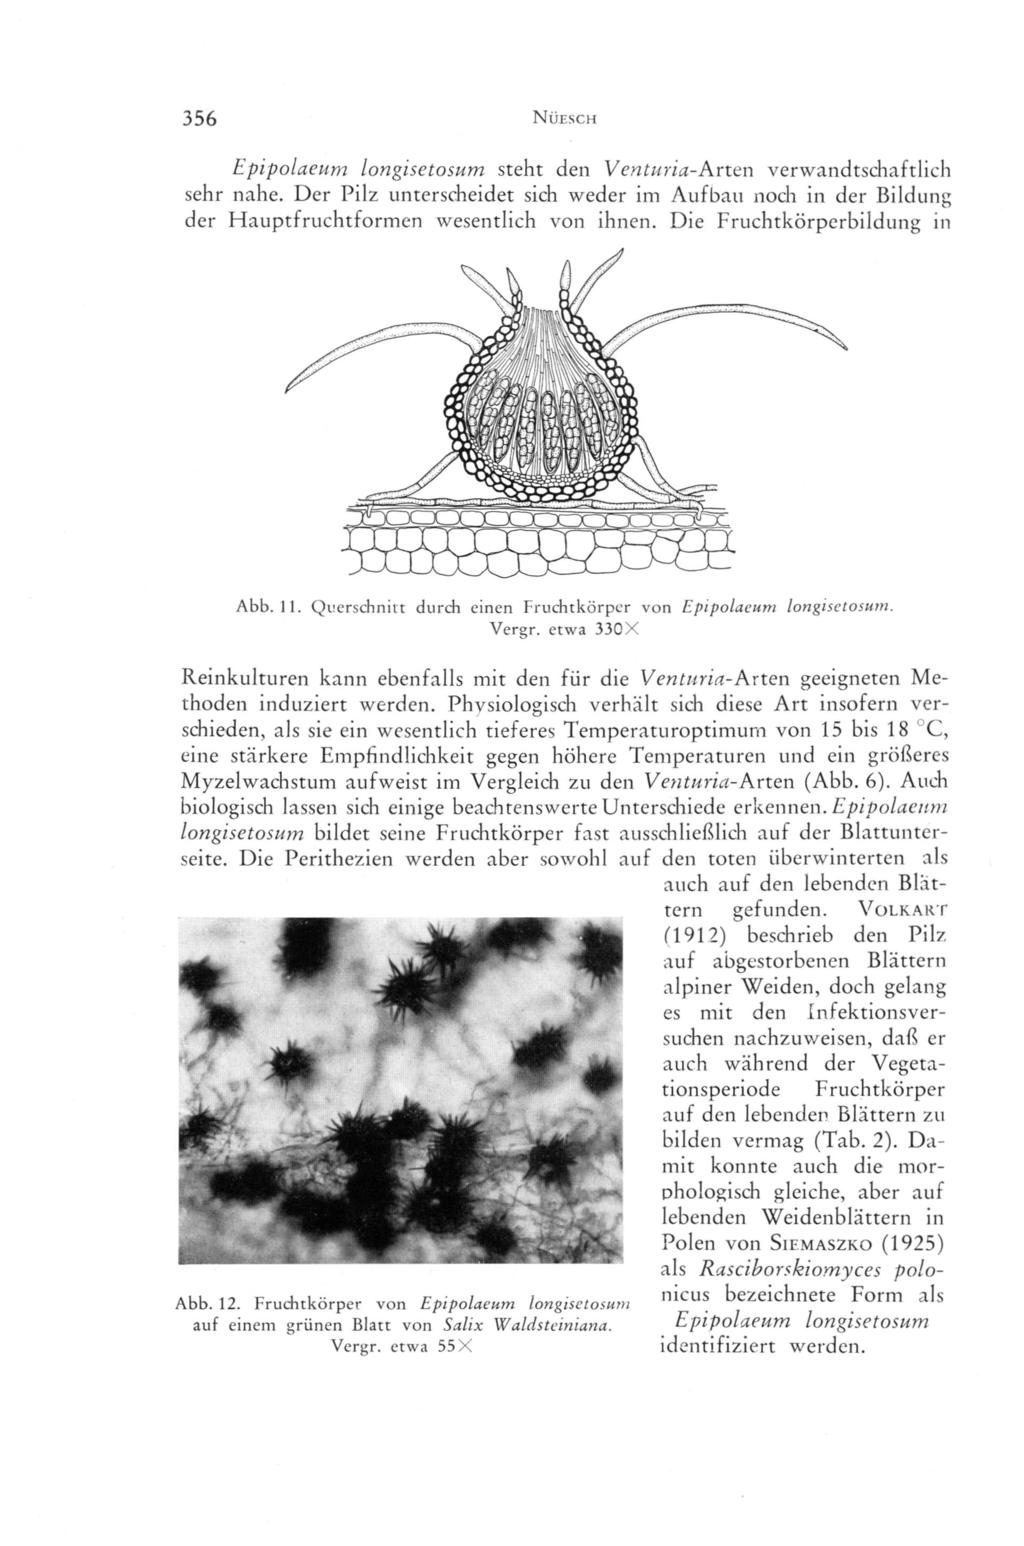 356 Nuesch Epipolaeum longisctosum steht den Venturia-A.rt.en verwandtschaftlich sehr nahe. Der Pilz unterscheidet sich weder im Aufbau noch in der Bildung der Hauptfruchtformen wesentlich von ihnen.